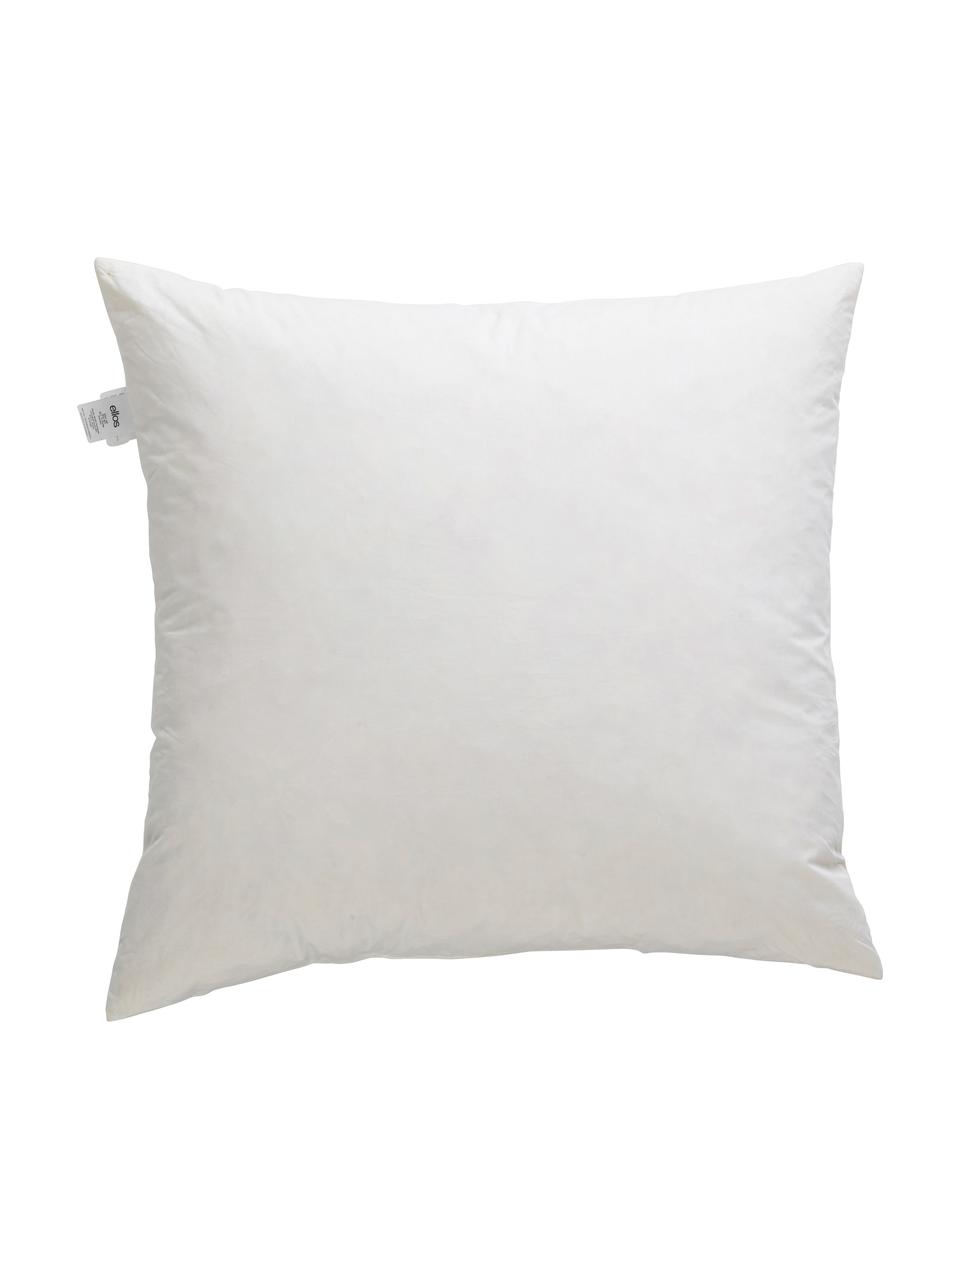 Wkład do poduszki dekoracyjnej Kudde, Biały, S 60 x D 60 cm